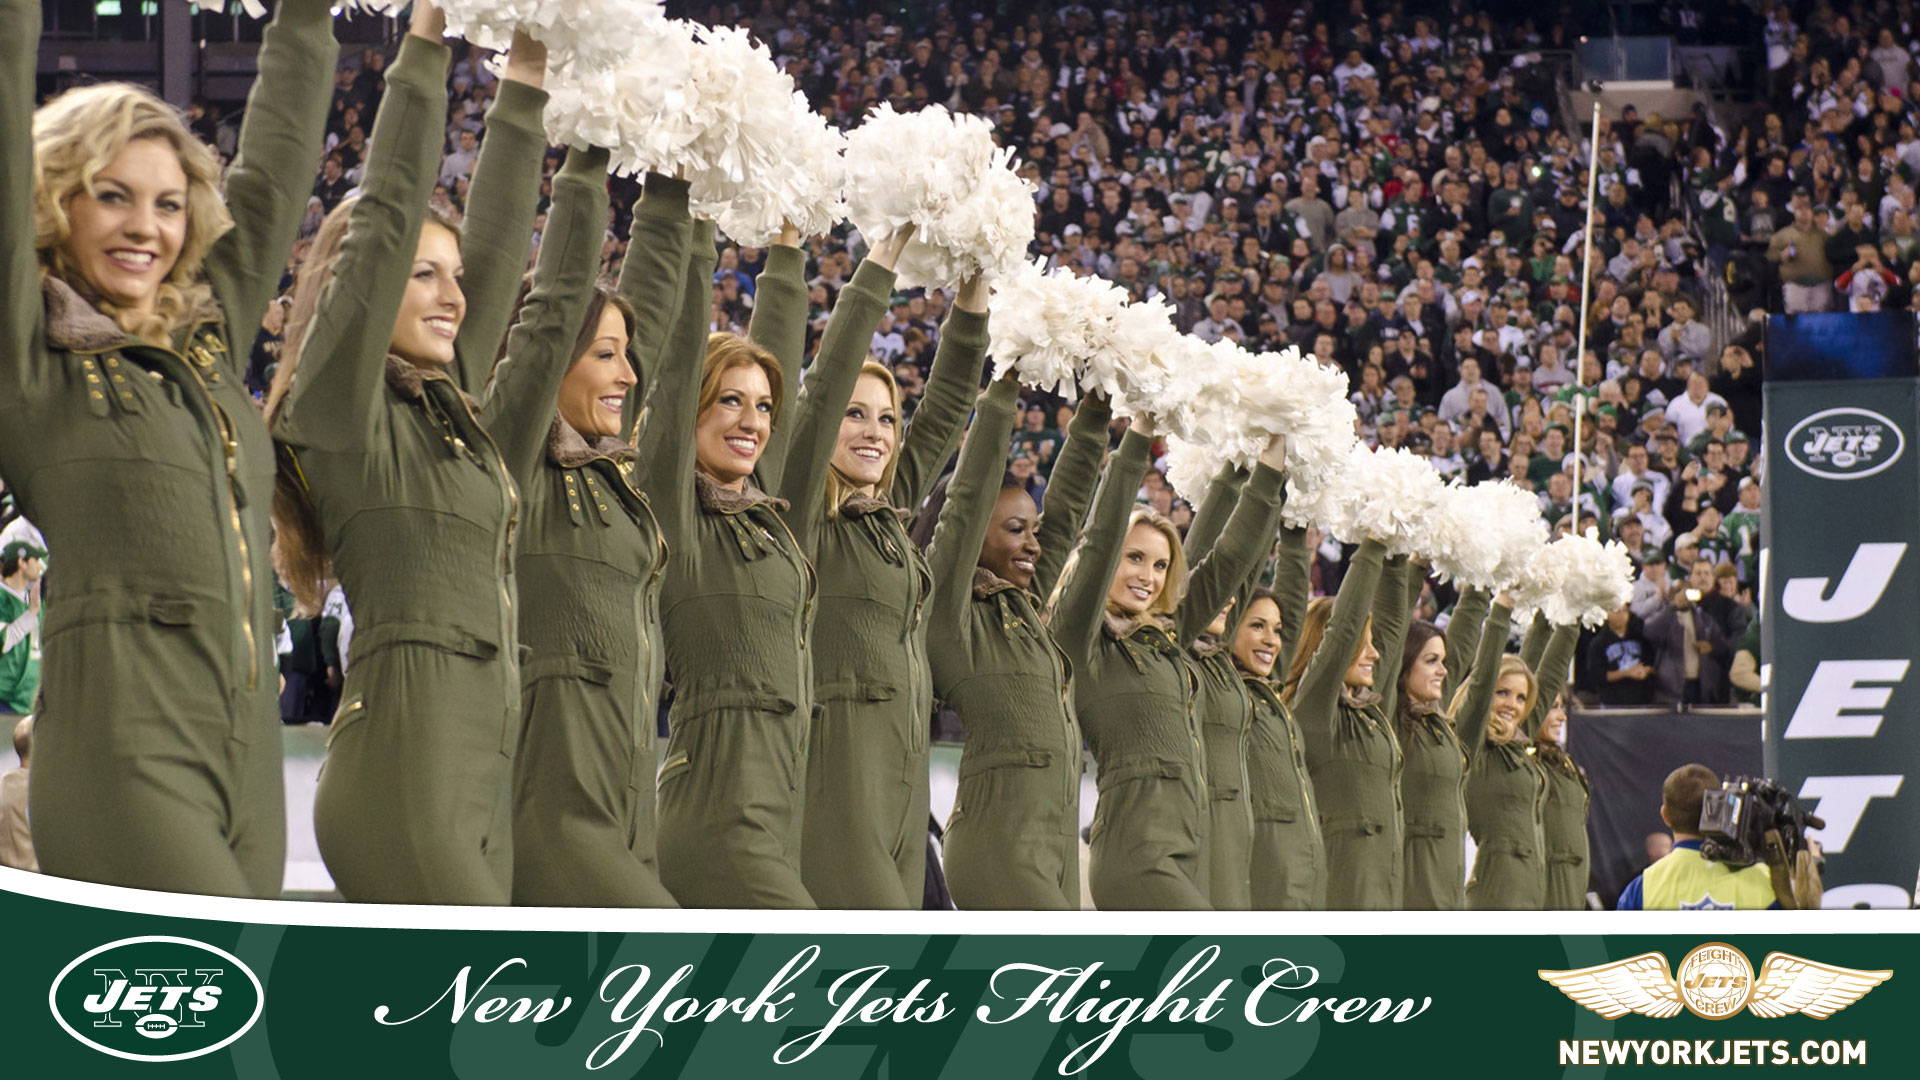 New York Jets Cheerleaders Posing As Flight Crew Members HD